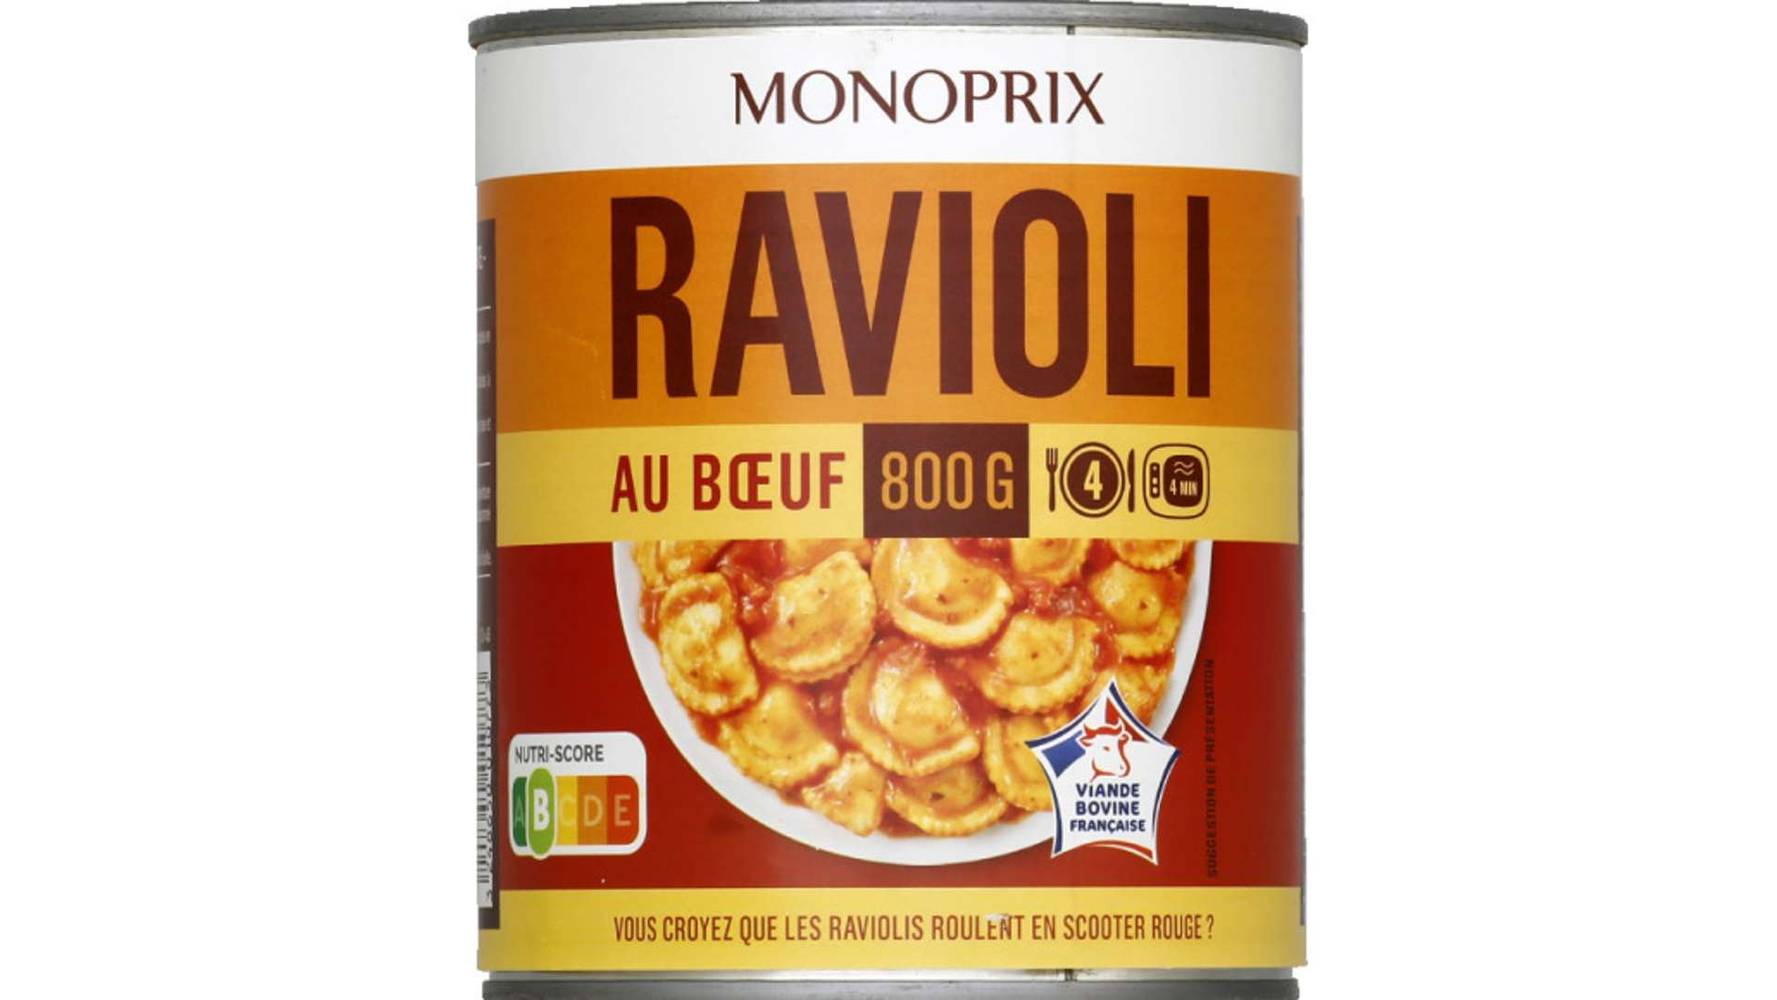 Monoprix Ravioli au boeuf La boîte de 800 g